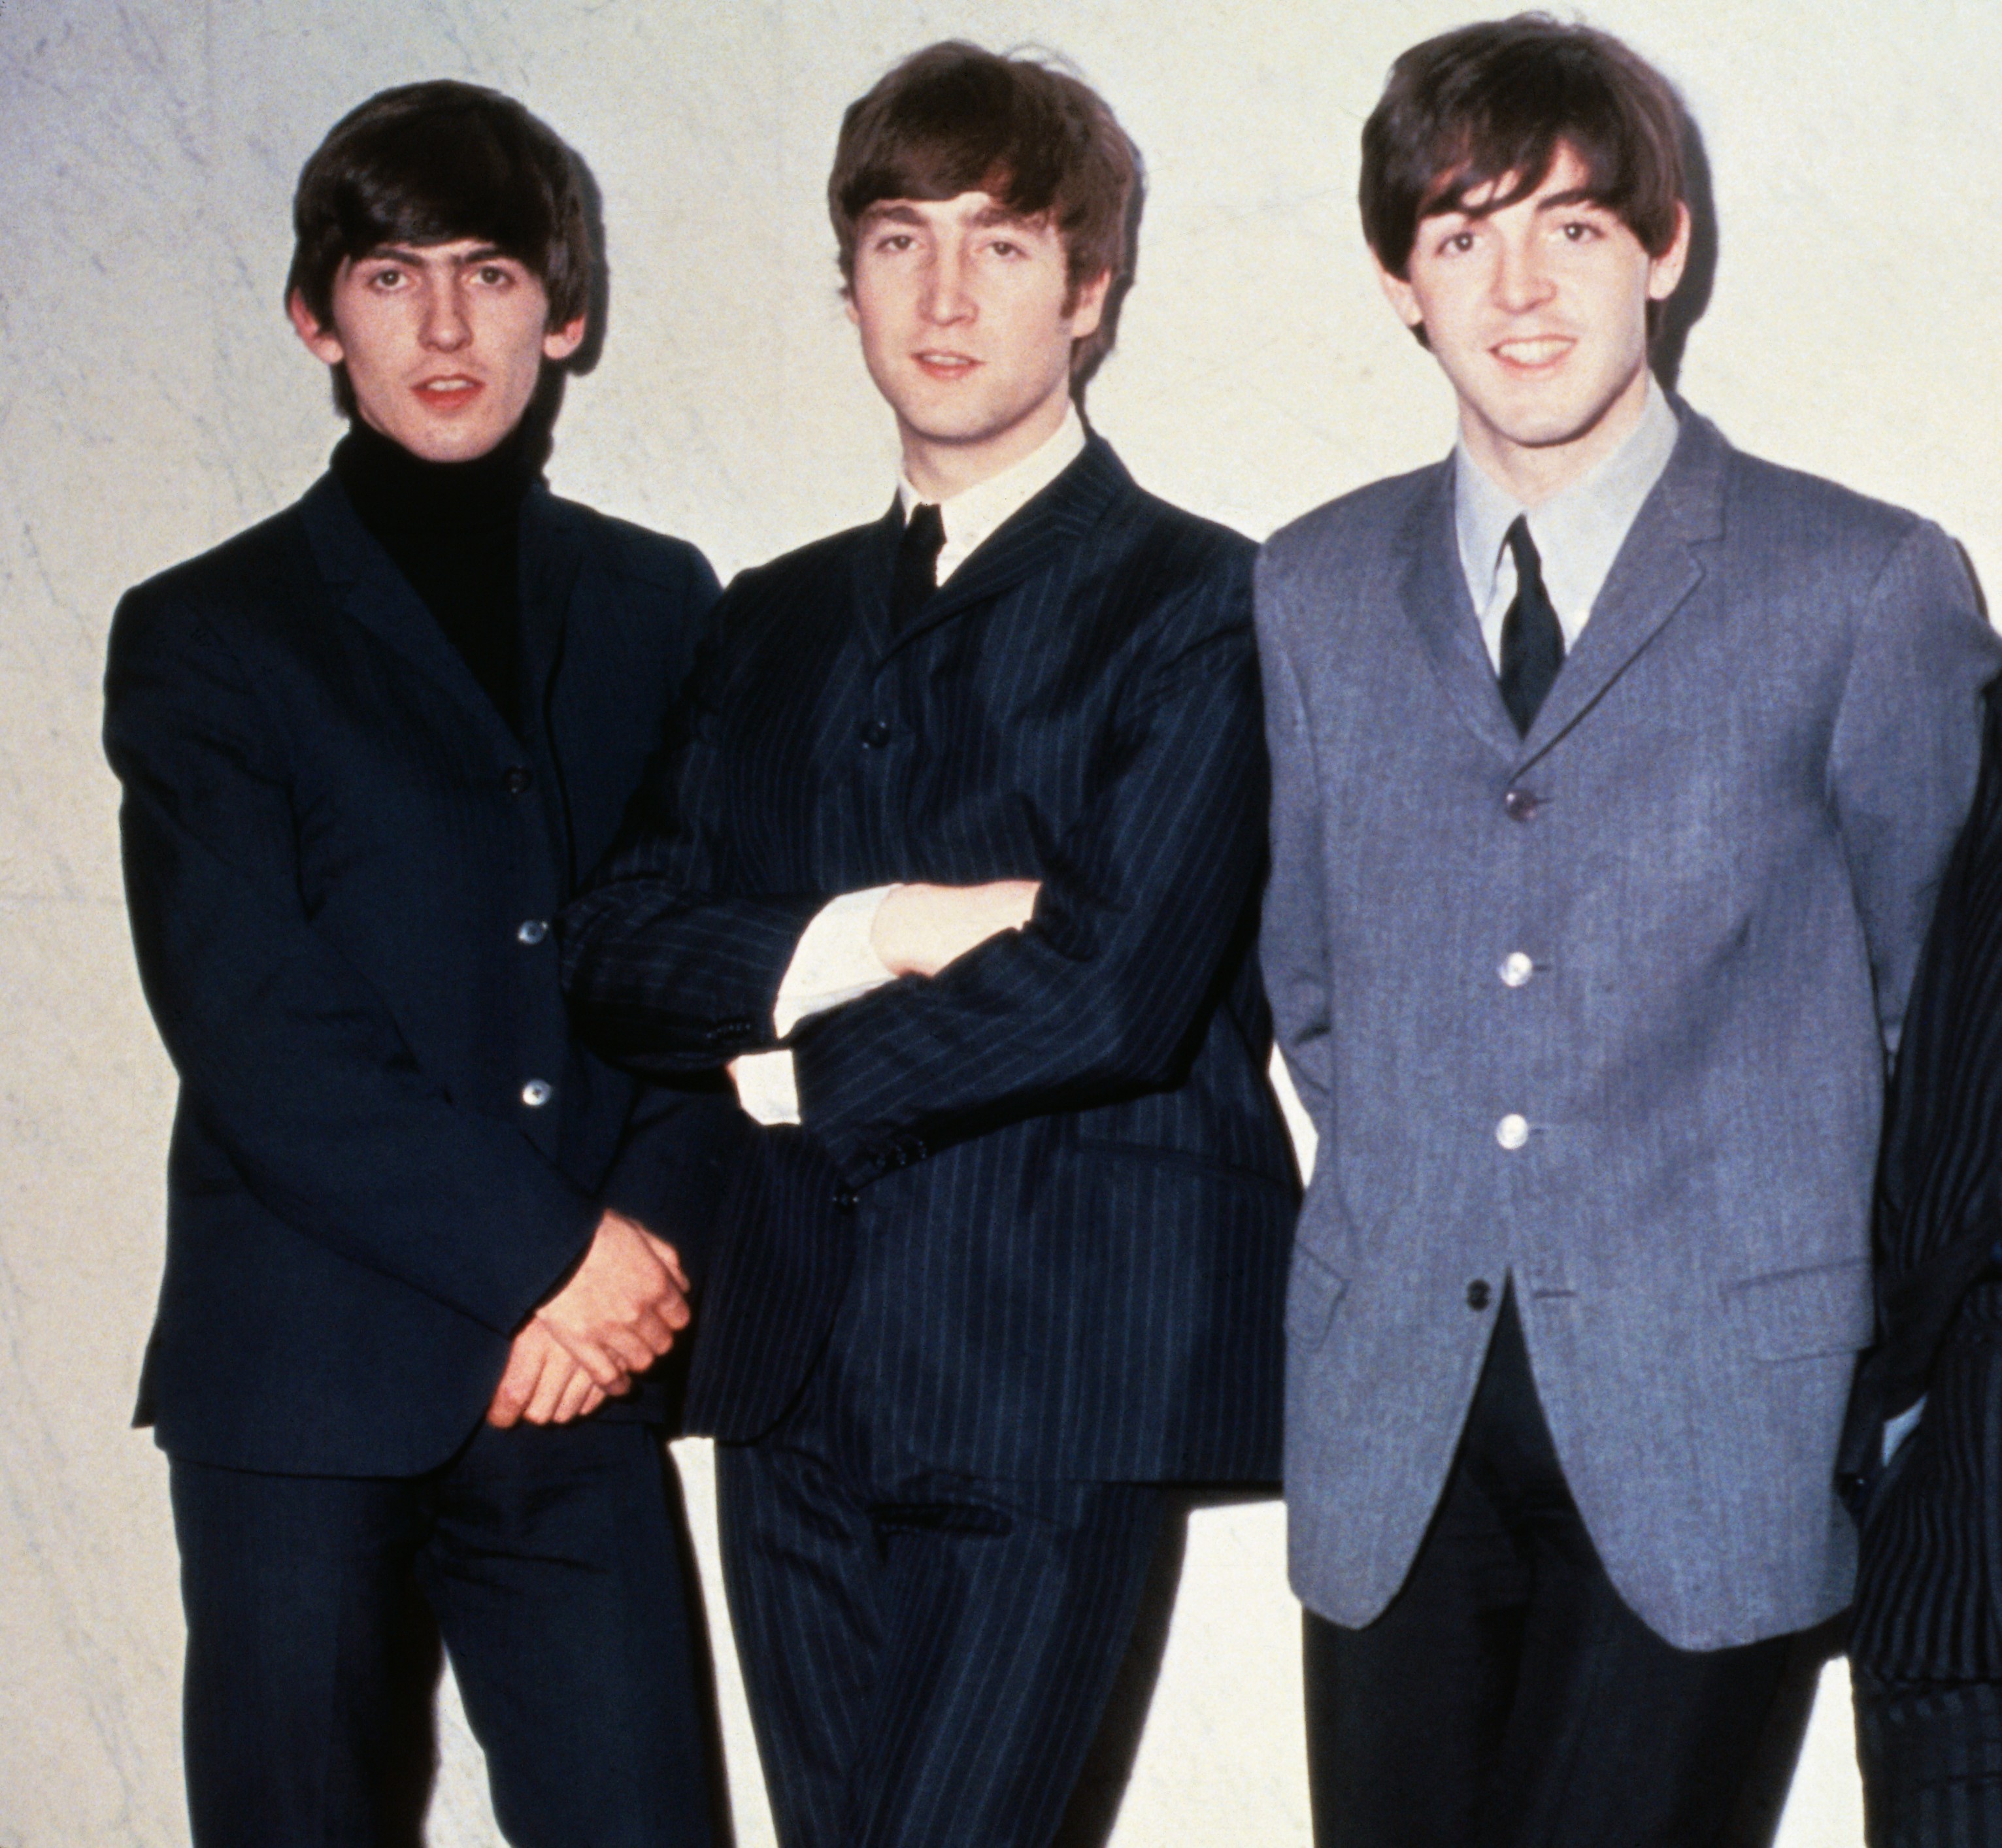 The Beatles' George Harrison, John Lennon, and Paul McCartney near a wall